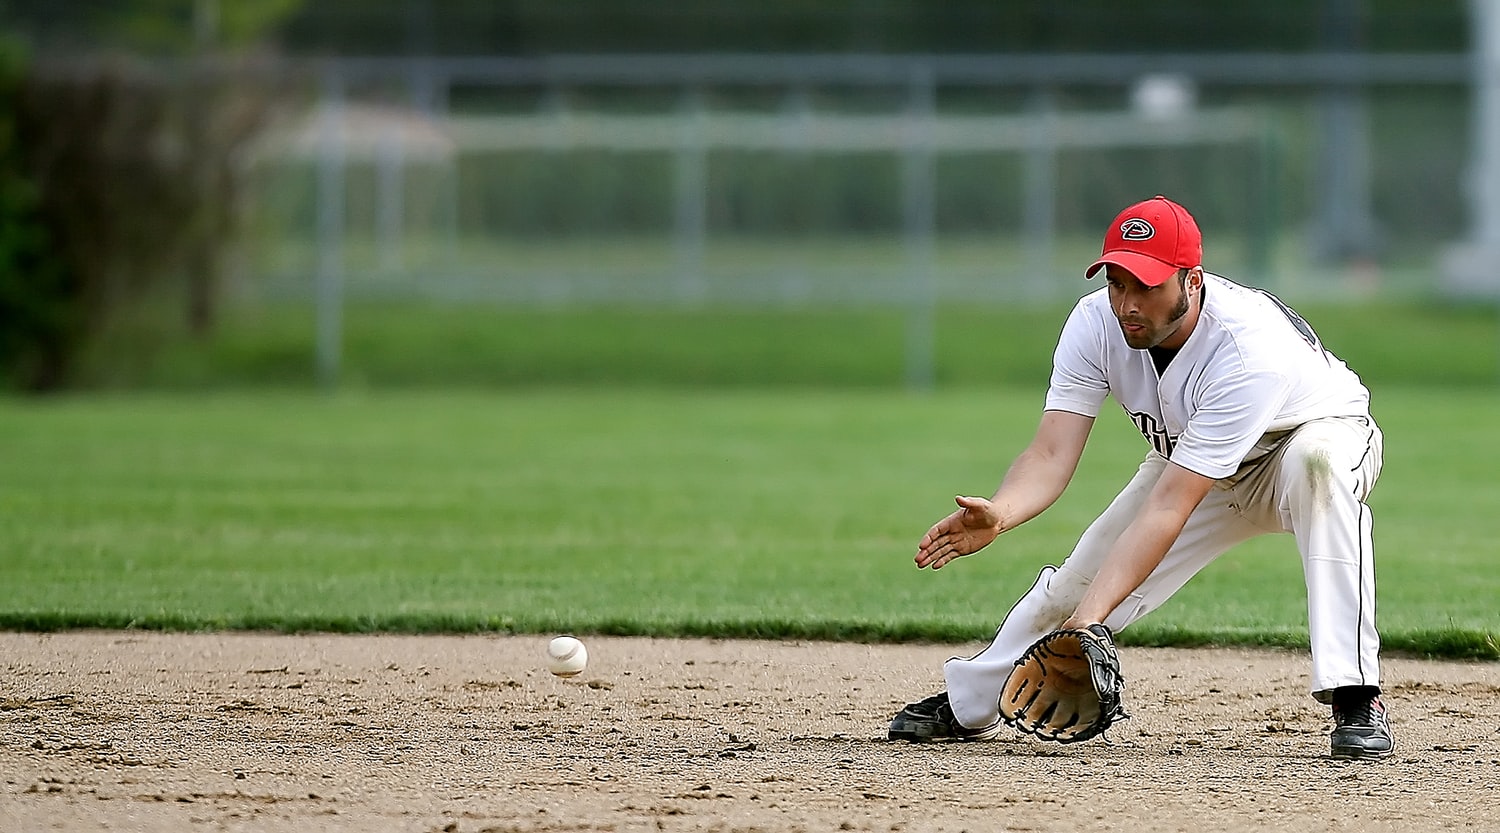 baseball player fielding ball